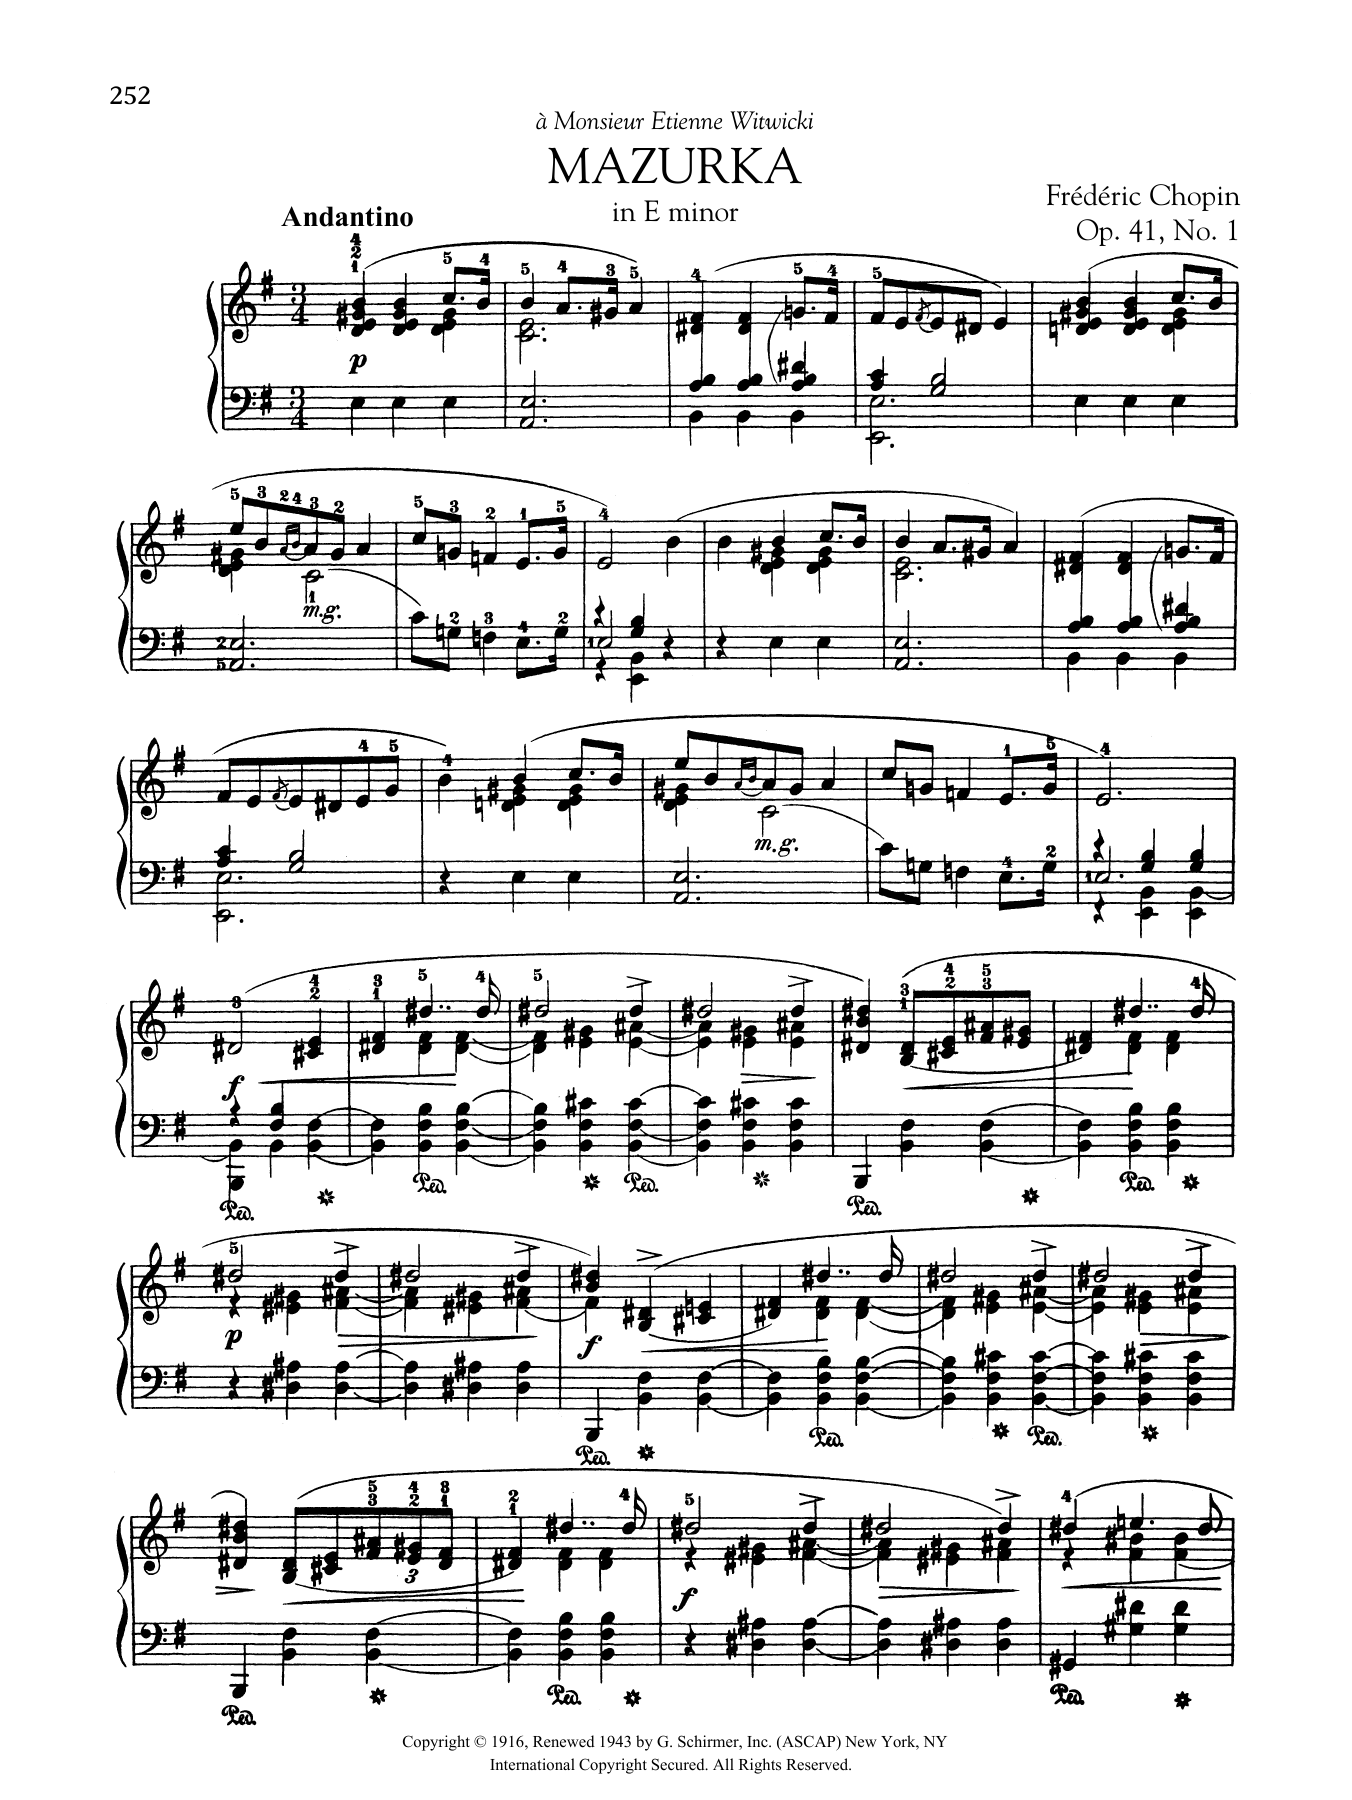 Download Frederic Chopin Mazurka in E minor, Op. 41, No. 1 Sheet Music